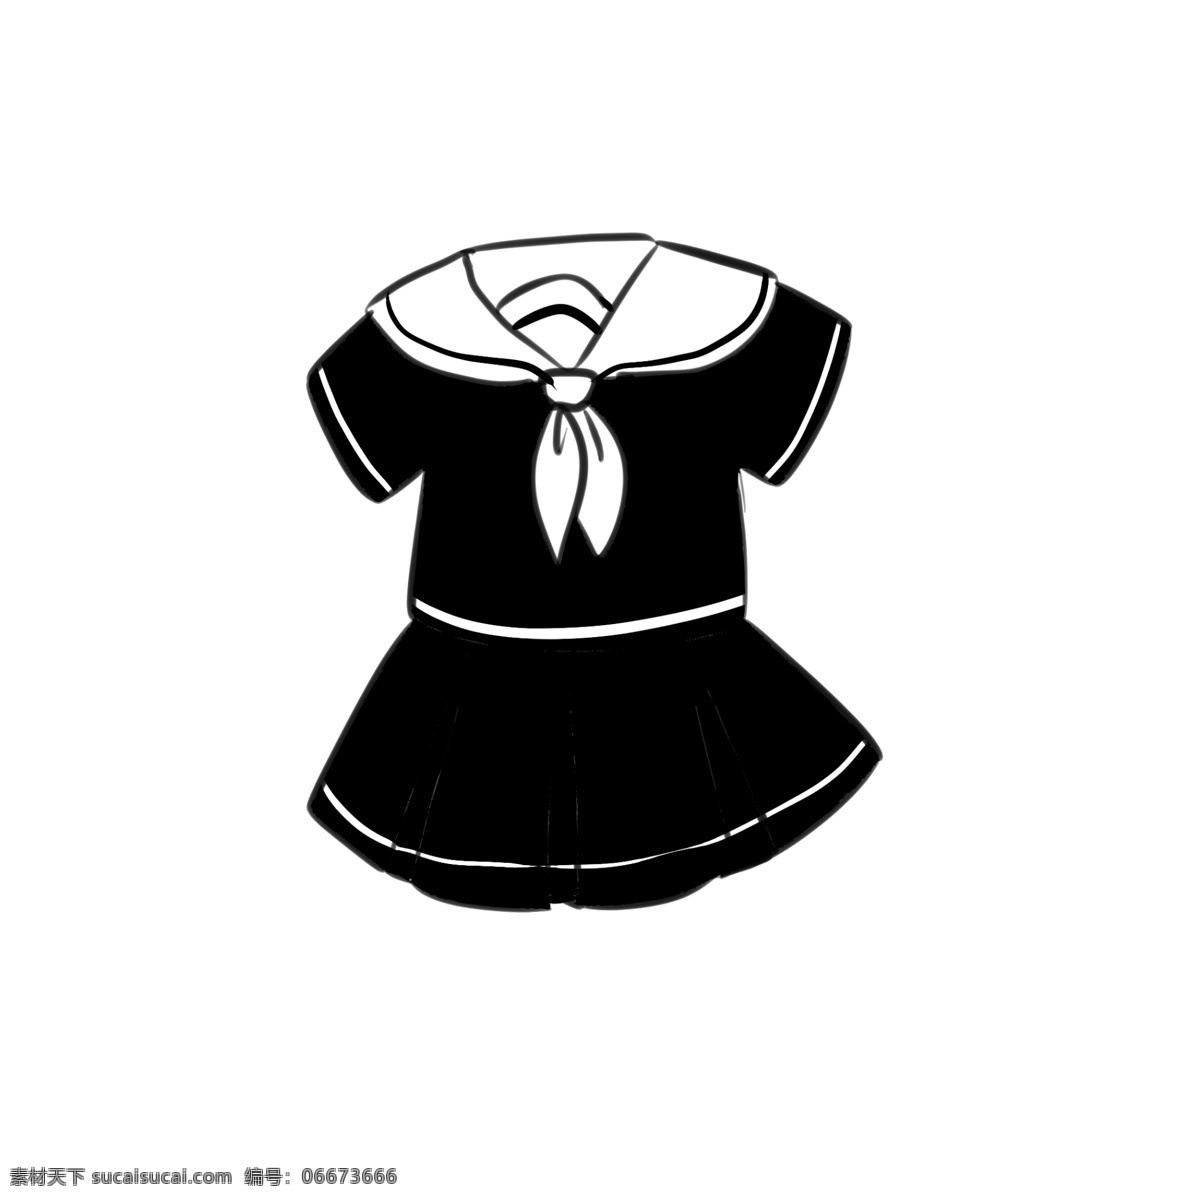 套 黑色 水手 服 可爱 卡通 动漫 漫画 萌系 二次元 小清新 简约风格 简单 创意 水手服 校服 服装 女装